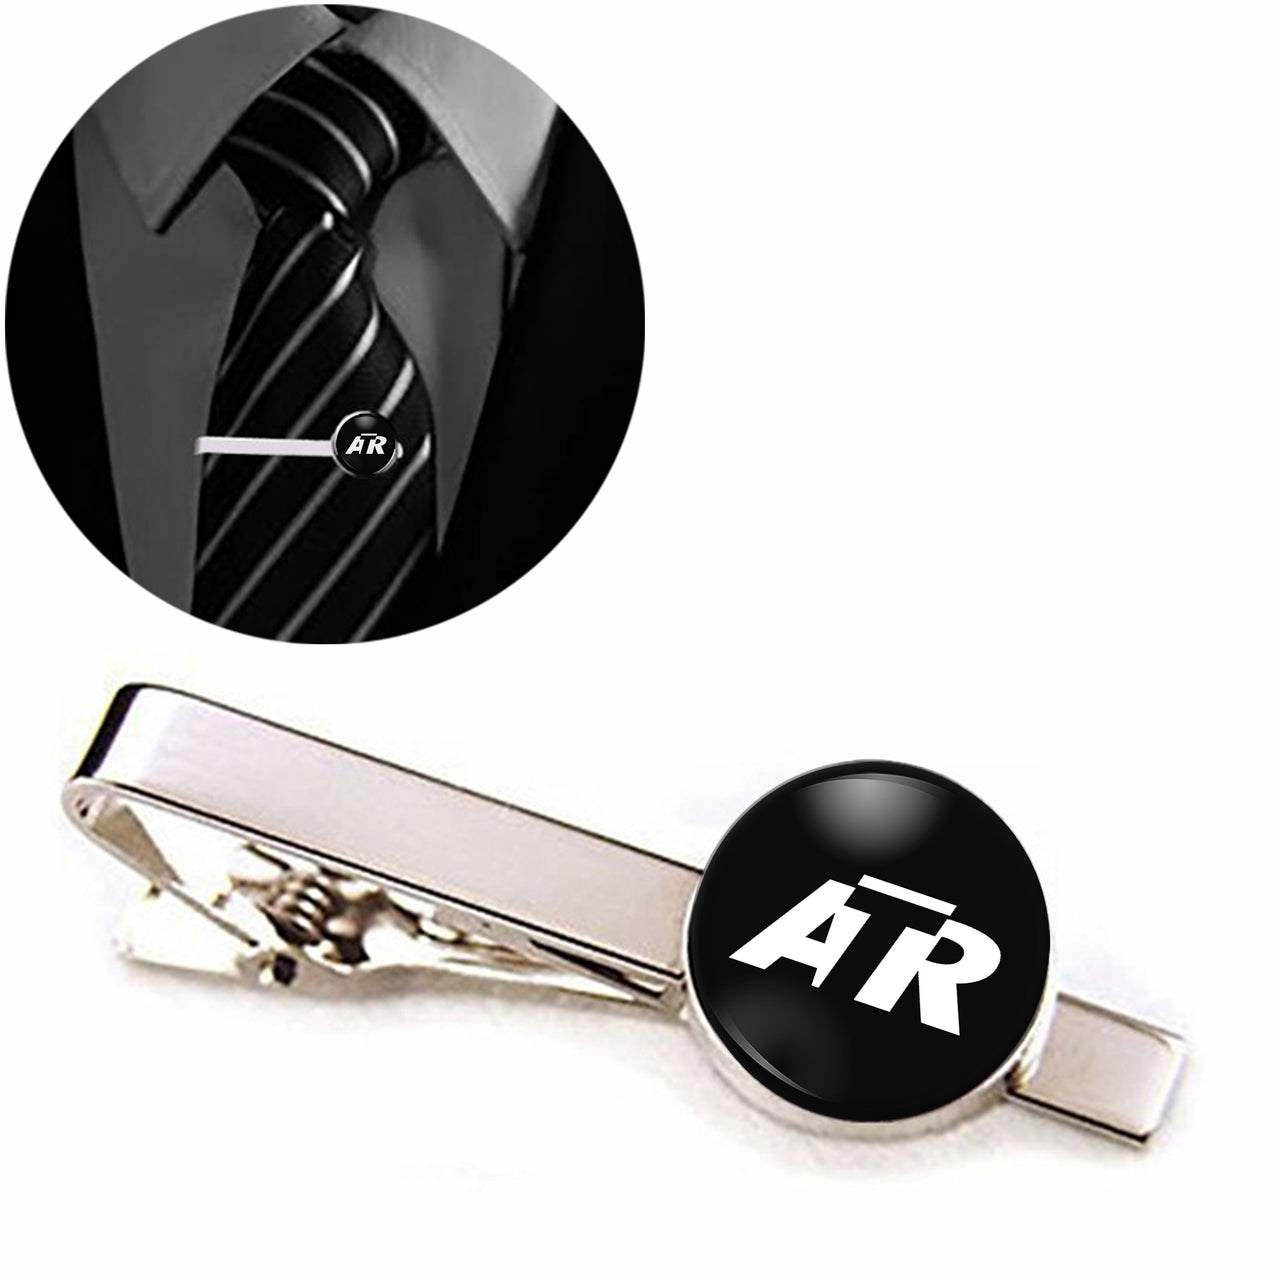 ATR & Text Designed Tie Clips